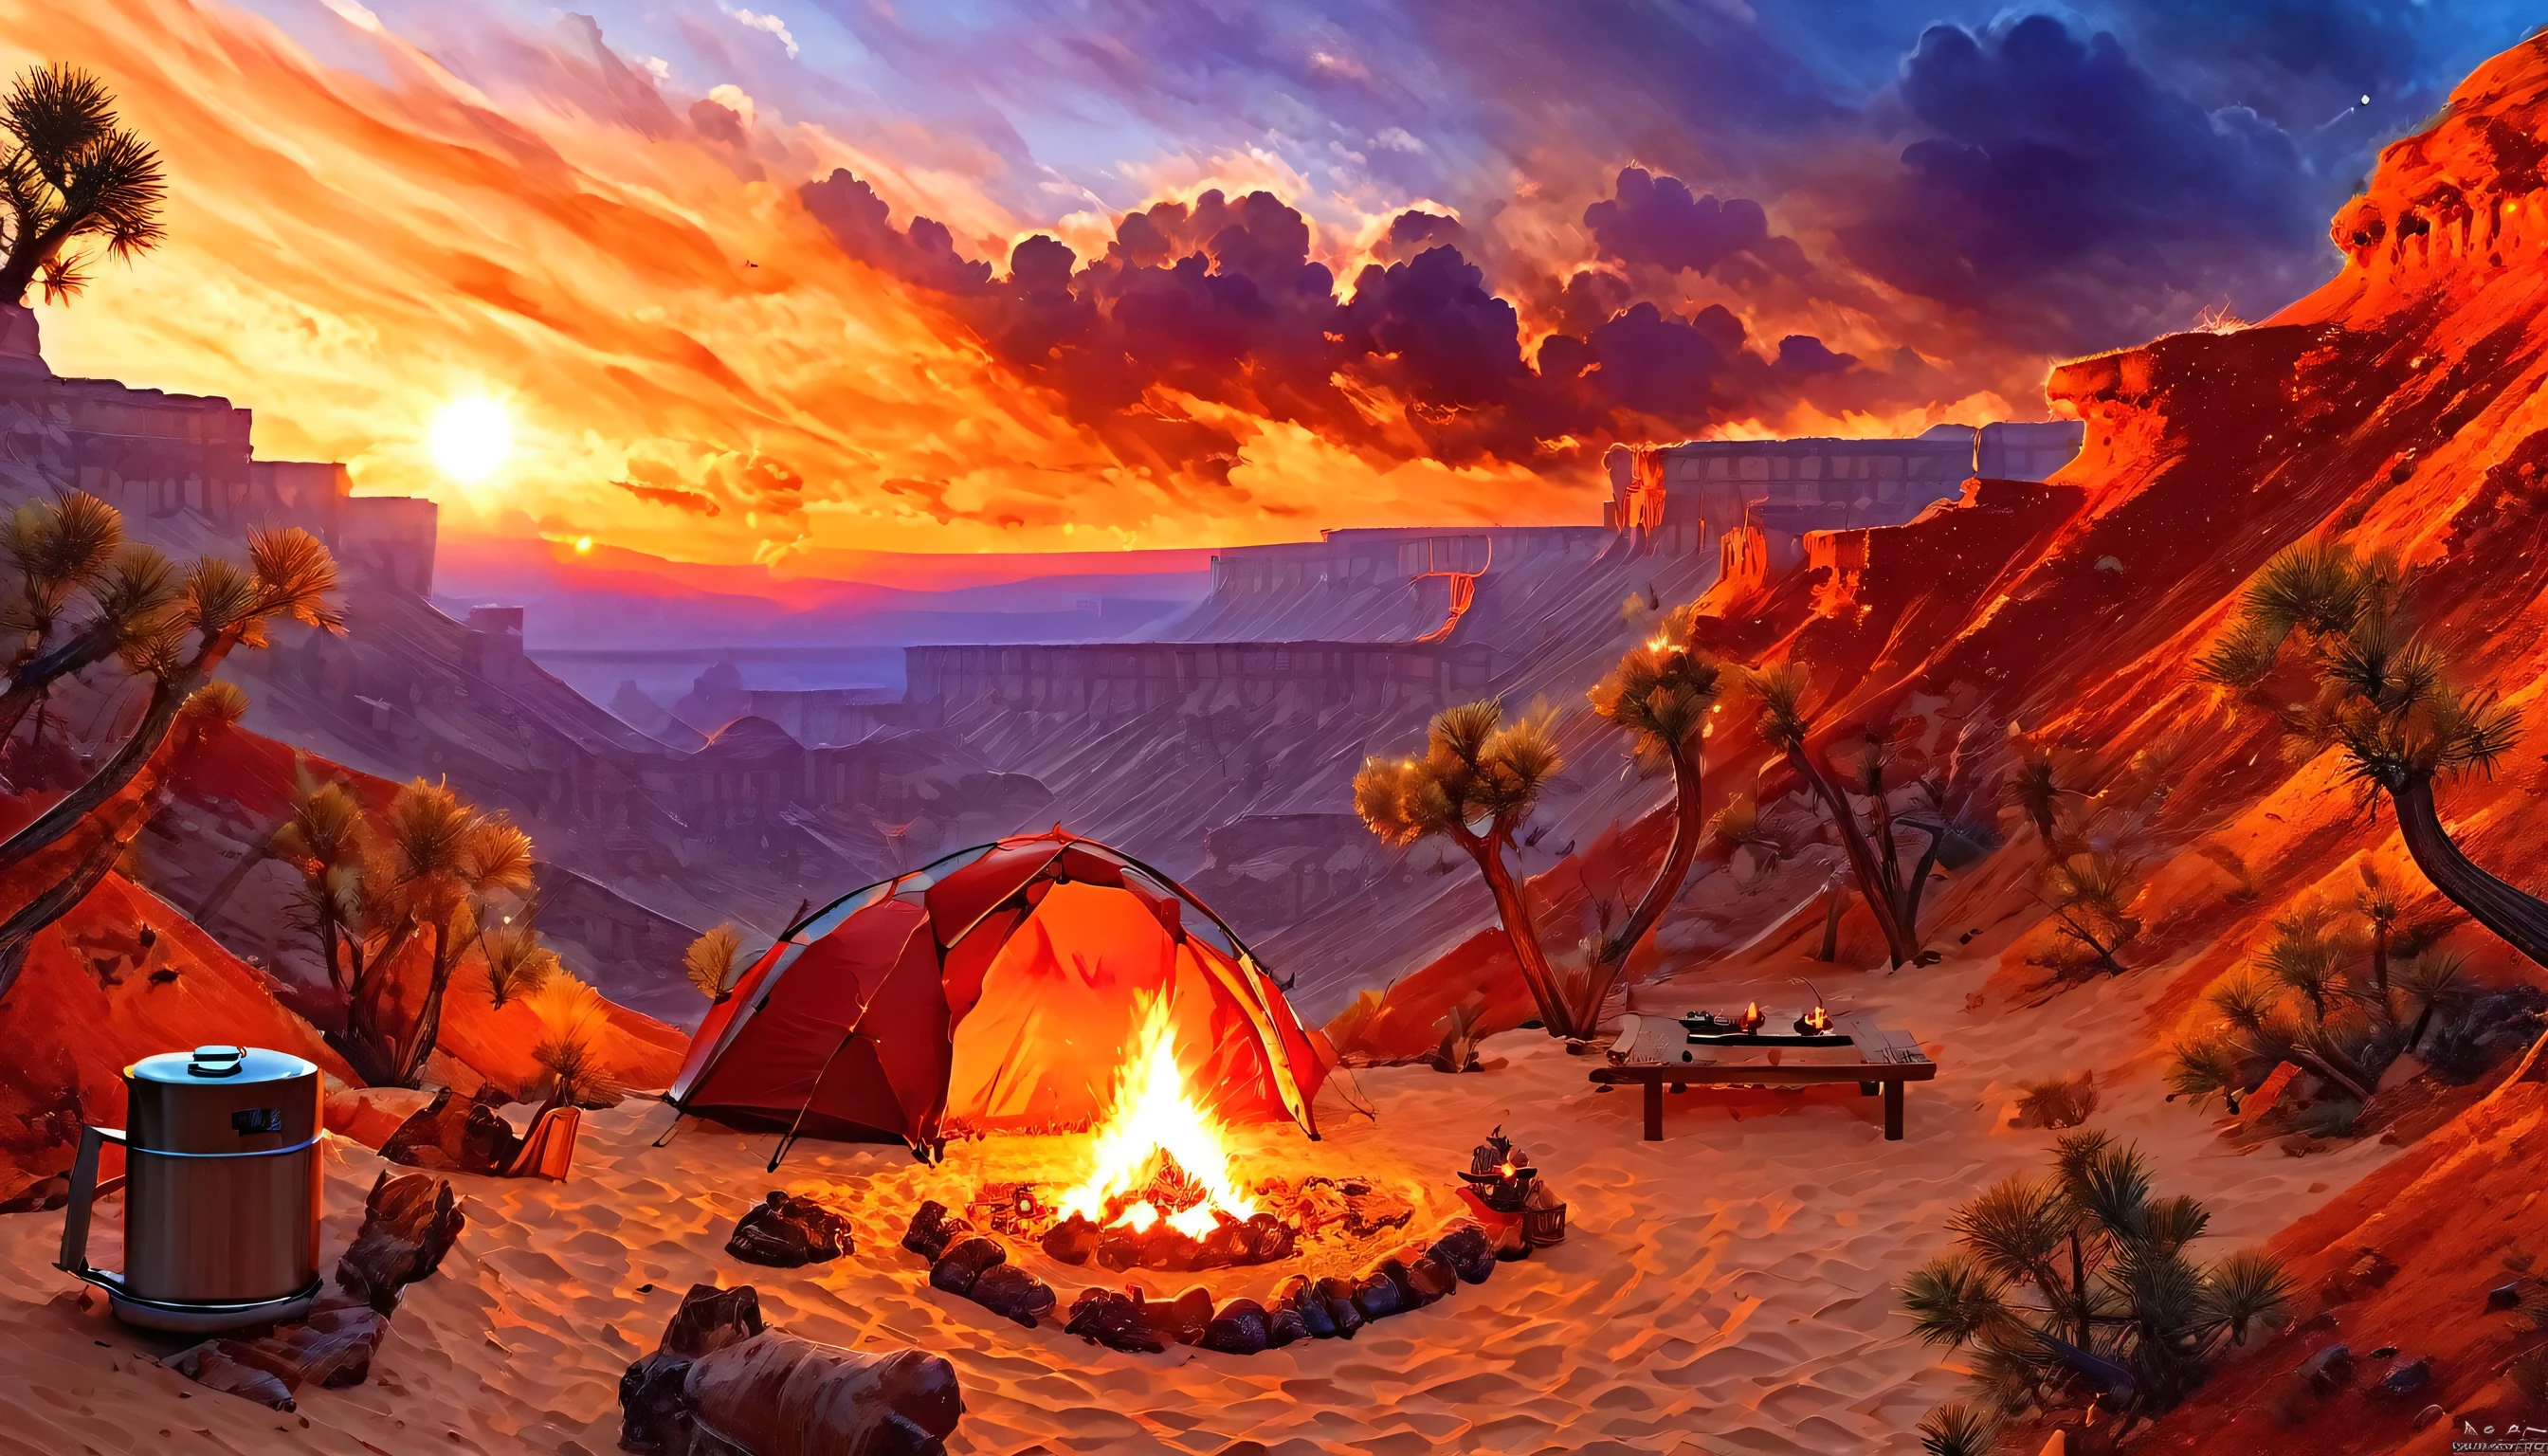 arafed, uma foto de um acampamento (tent: 1.2) e pequeno (fogueira: 1.3), no topo de uma montanha deserta, seu pôr do sol o céu está em vários tons de  (vermelho: 1.1), (laranja: 1.1), (Azul: 1.1) (roxo:1.1) há fumaça subindo do acampamento de bombeiros, há uma vista magnífica do desfiladeiro do deserto e das ravinas, há árvores esparsas no horizonte, é um momento de serenidade, paz, e relaxamento, melhor qualidade, 16k,  fotorrealismo, Sessão fotográfica vencedora do prêmio National Geographic, foto ultra ampla, Nebulosa Furiosa, senhora sombra